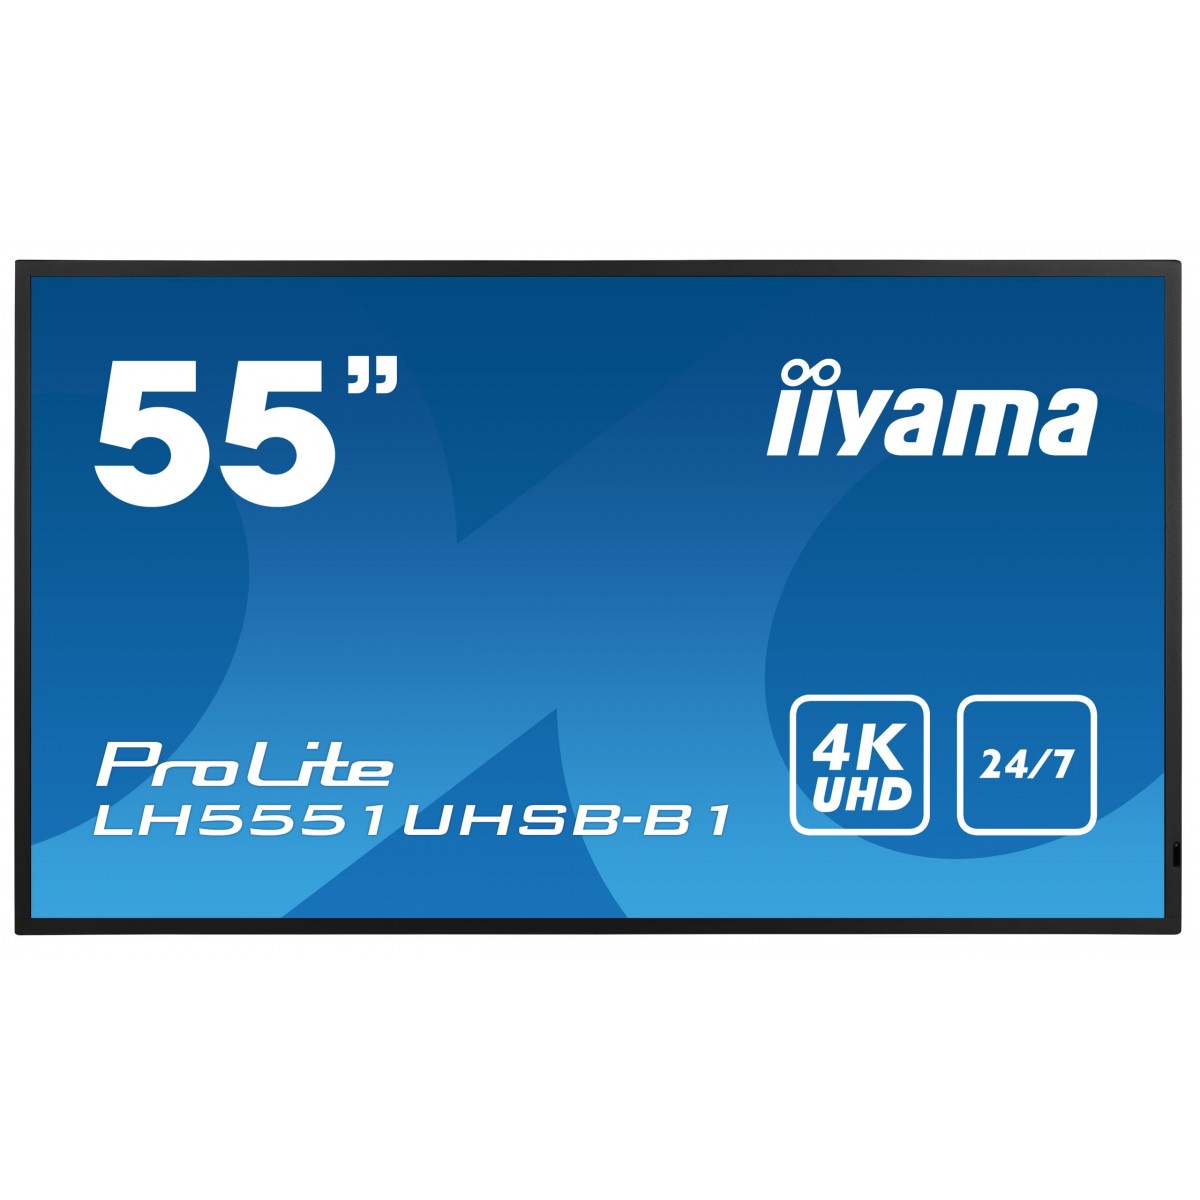 Iiyama DS LH5551UHSB 138.68cm 24-7 55-3840x2160-2xHDMI-2xDP